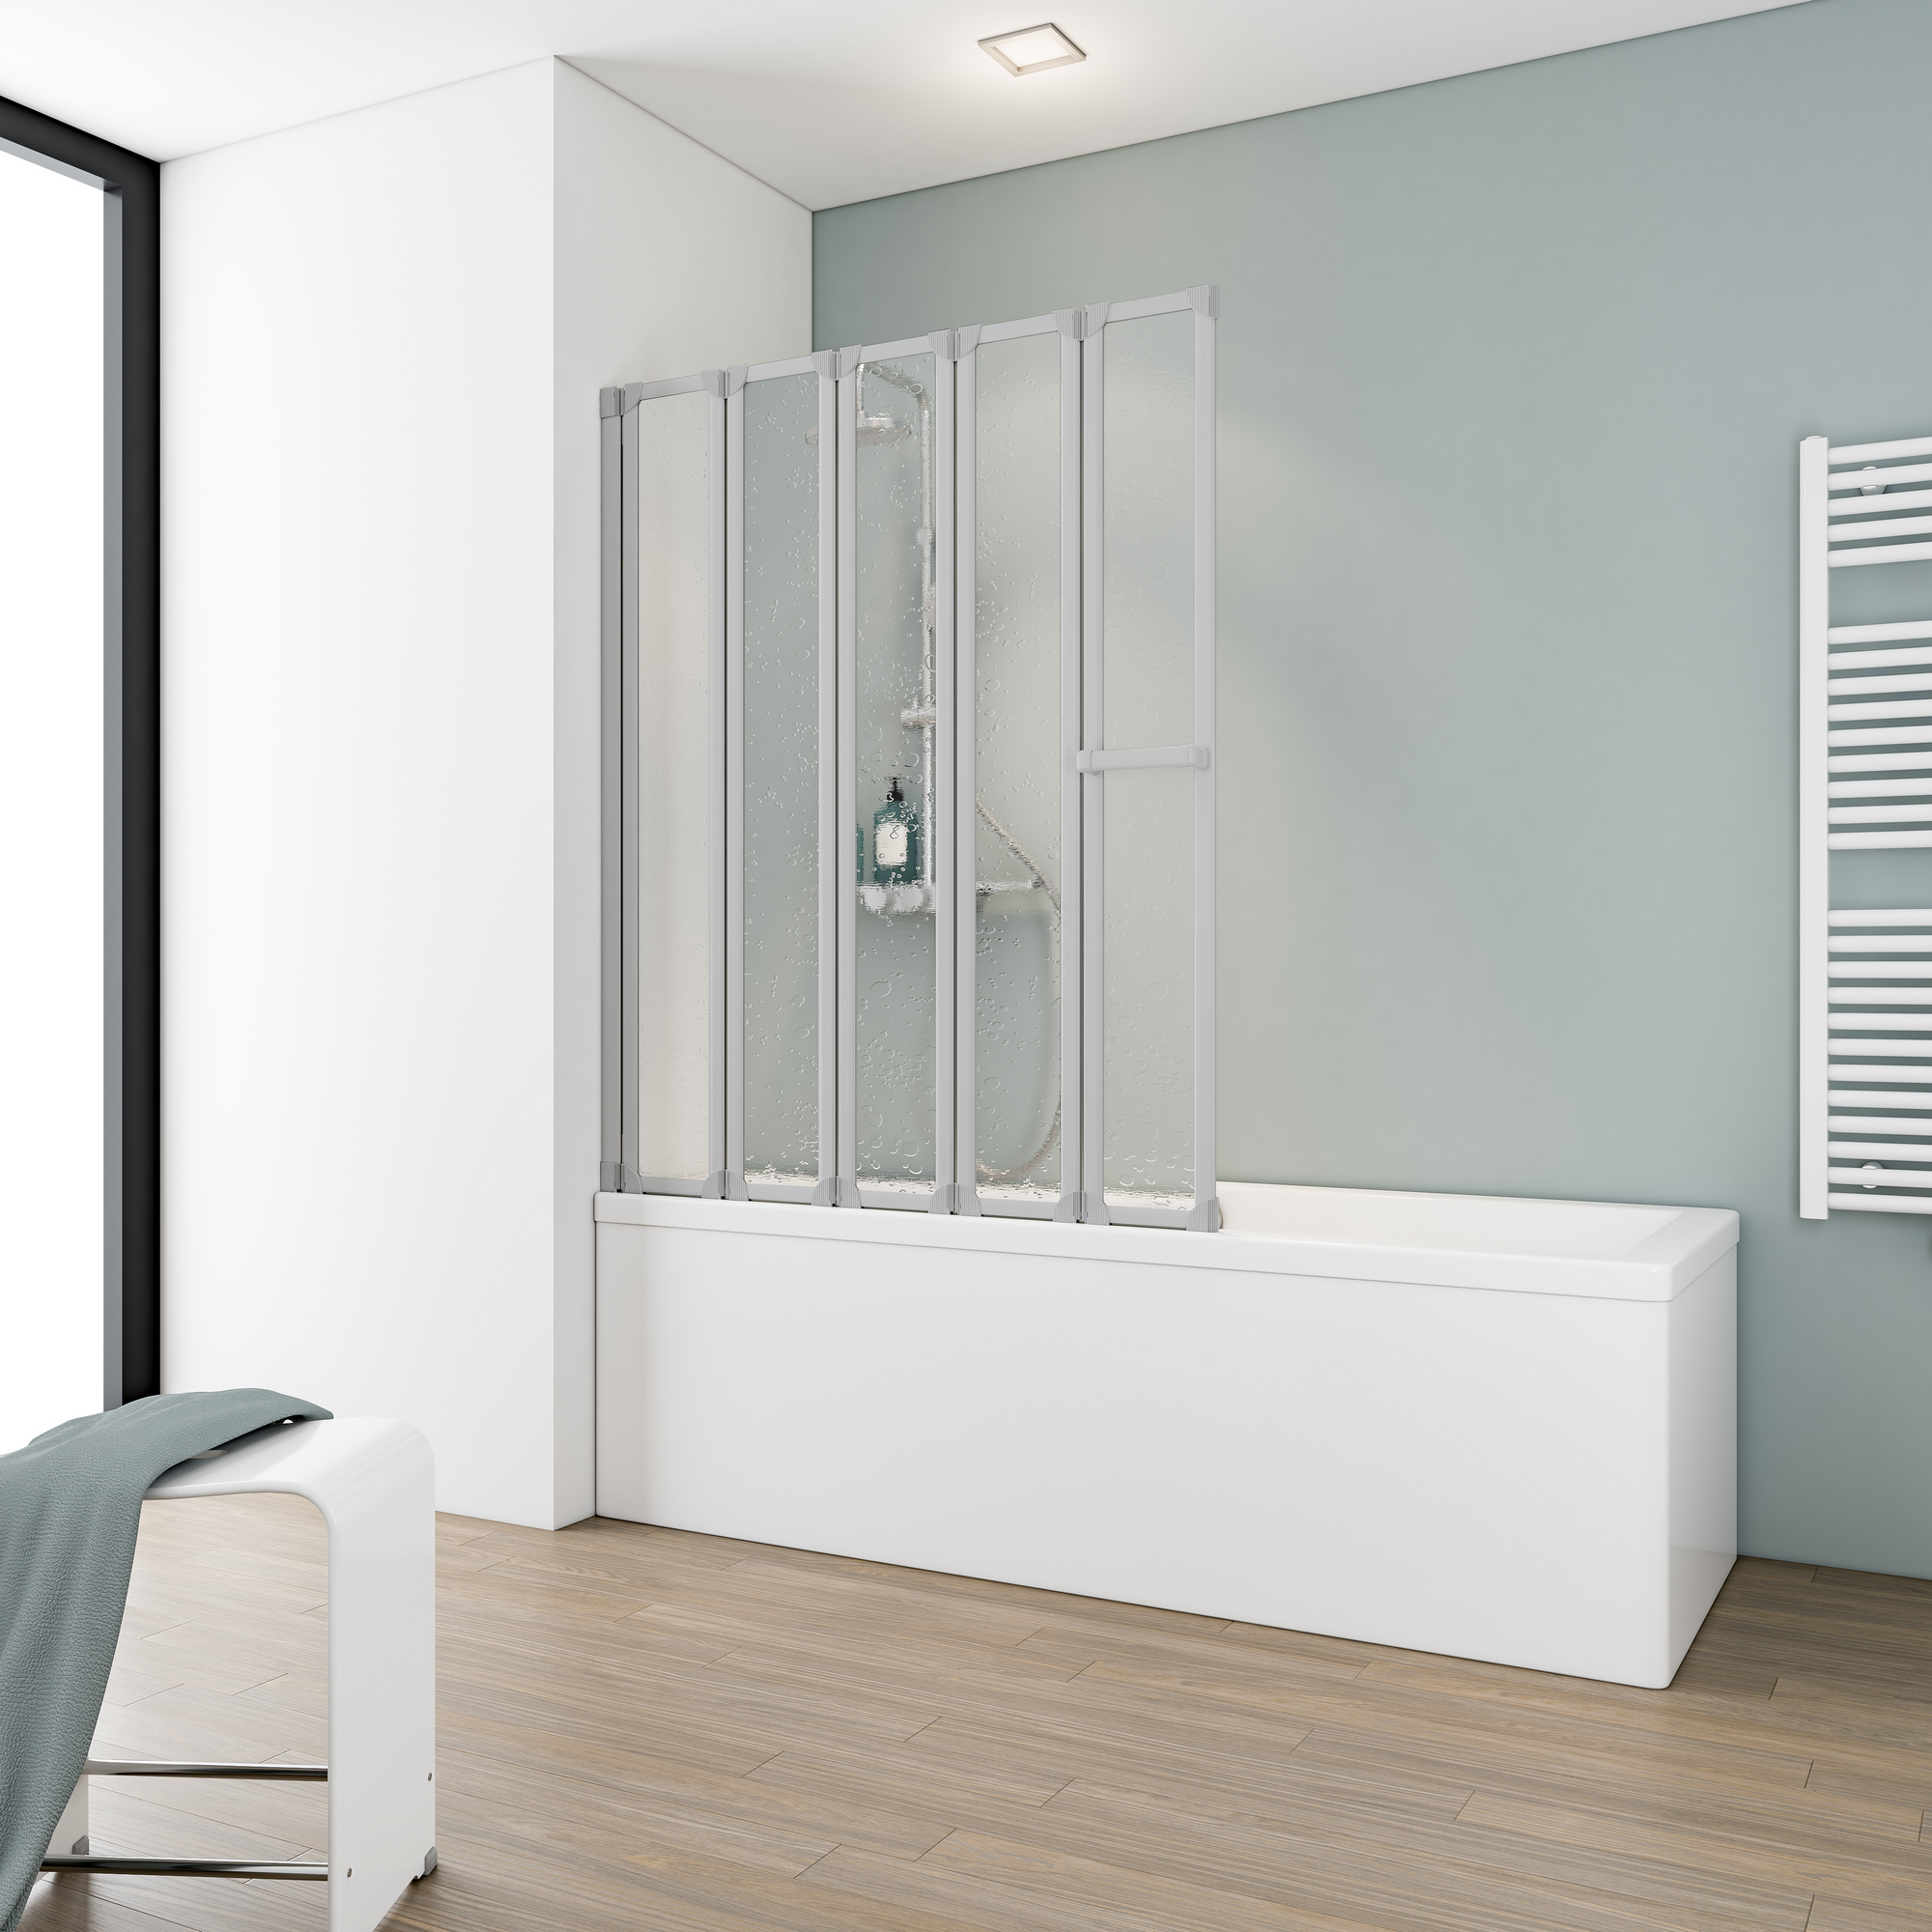 Badewannenfaltwand 'Komfort' vollgerahmt, aluminiumfarben, 80 x 140 cm, 5-teilig + product picture